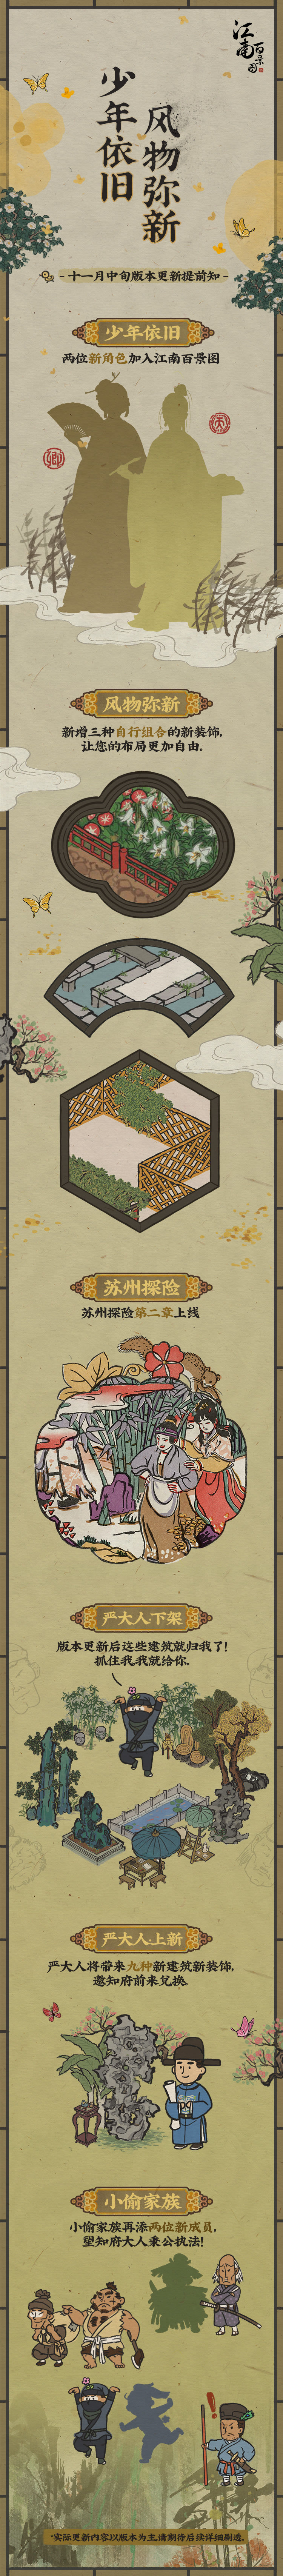 《江南百景图》11月中旬版本更新内容一览